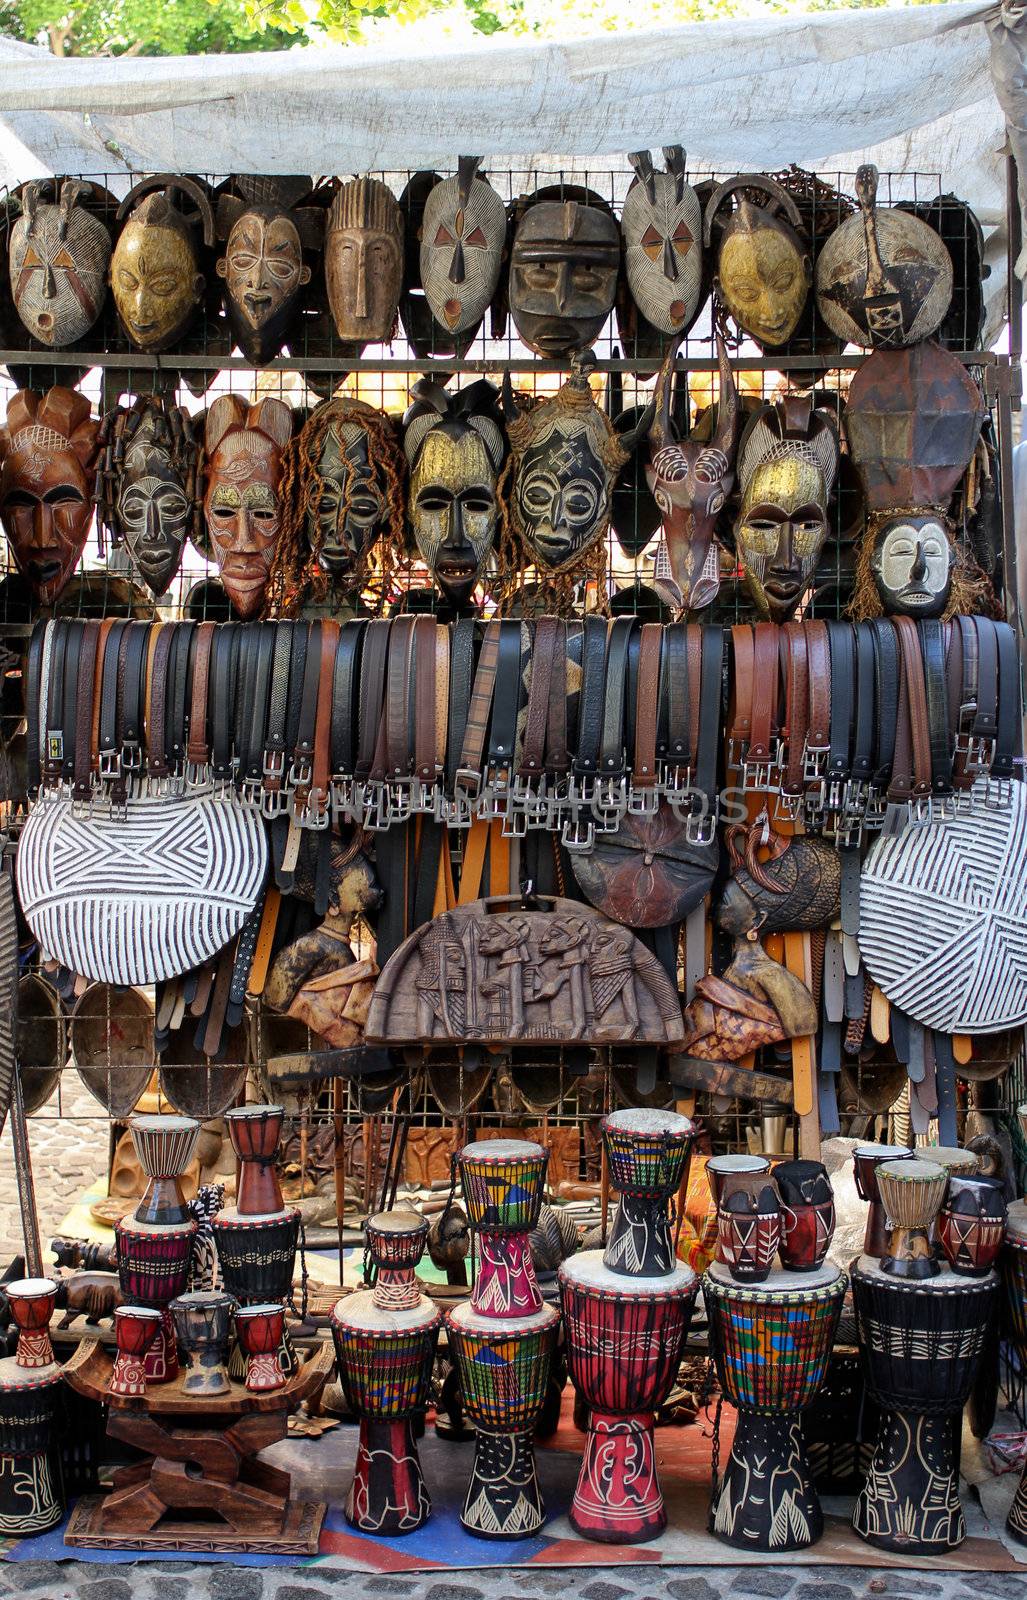 African Market by dwaschnig_photo